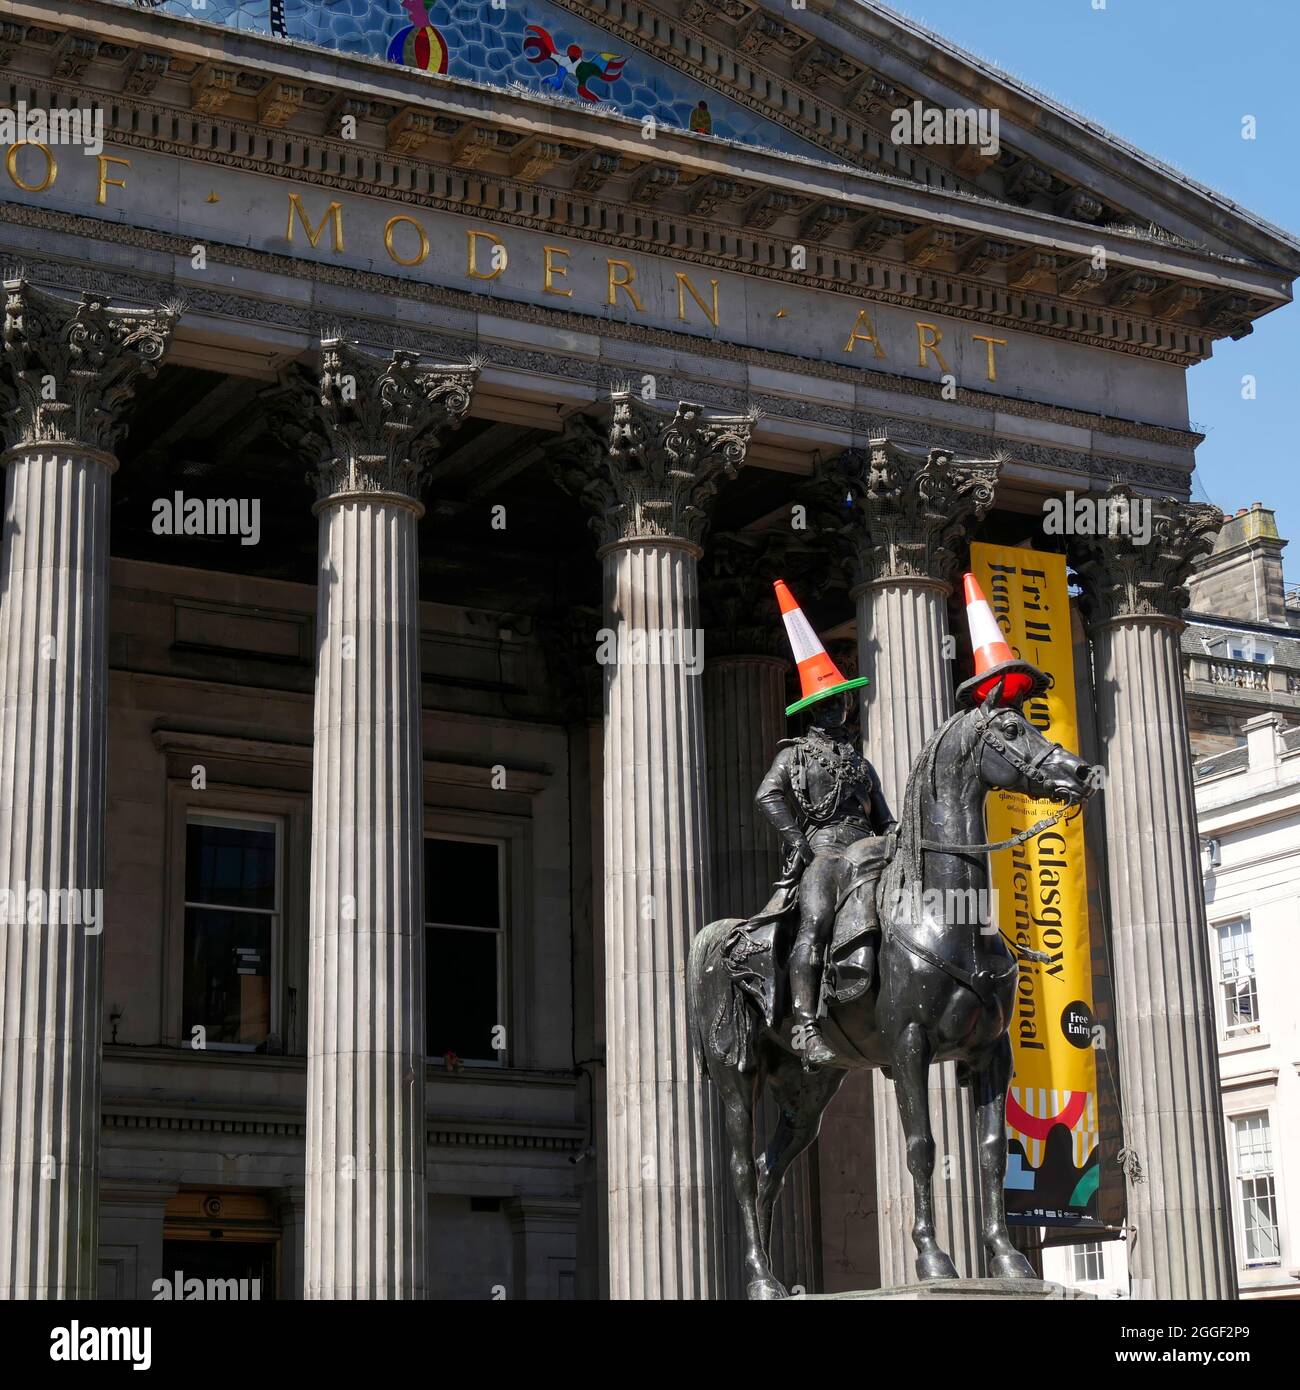 Statue du Duc de Wellington avec des cônes de circulation habituels, à l'extérieur de la Galerie d'art moderne, centre-ville de Glasgow, Écosse, Royaume-Uni Banque D'Images